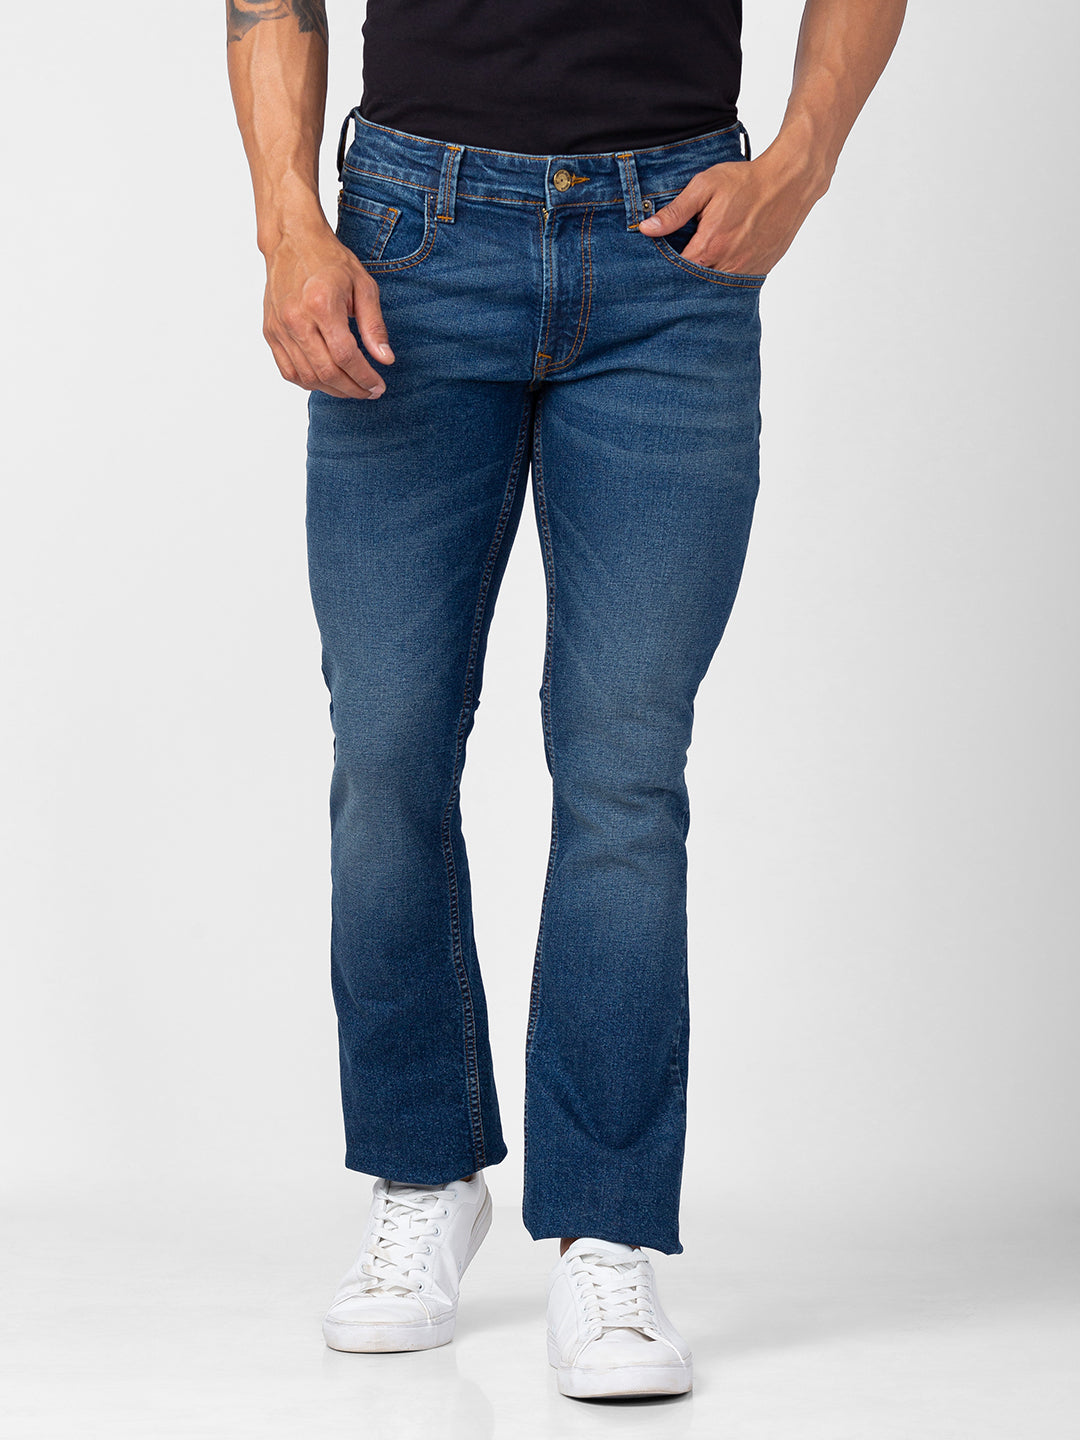 Spykar Men Vintage Blue Cotton Comfort Fit Regular Length Jeans (Rafter)